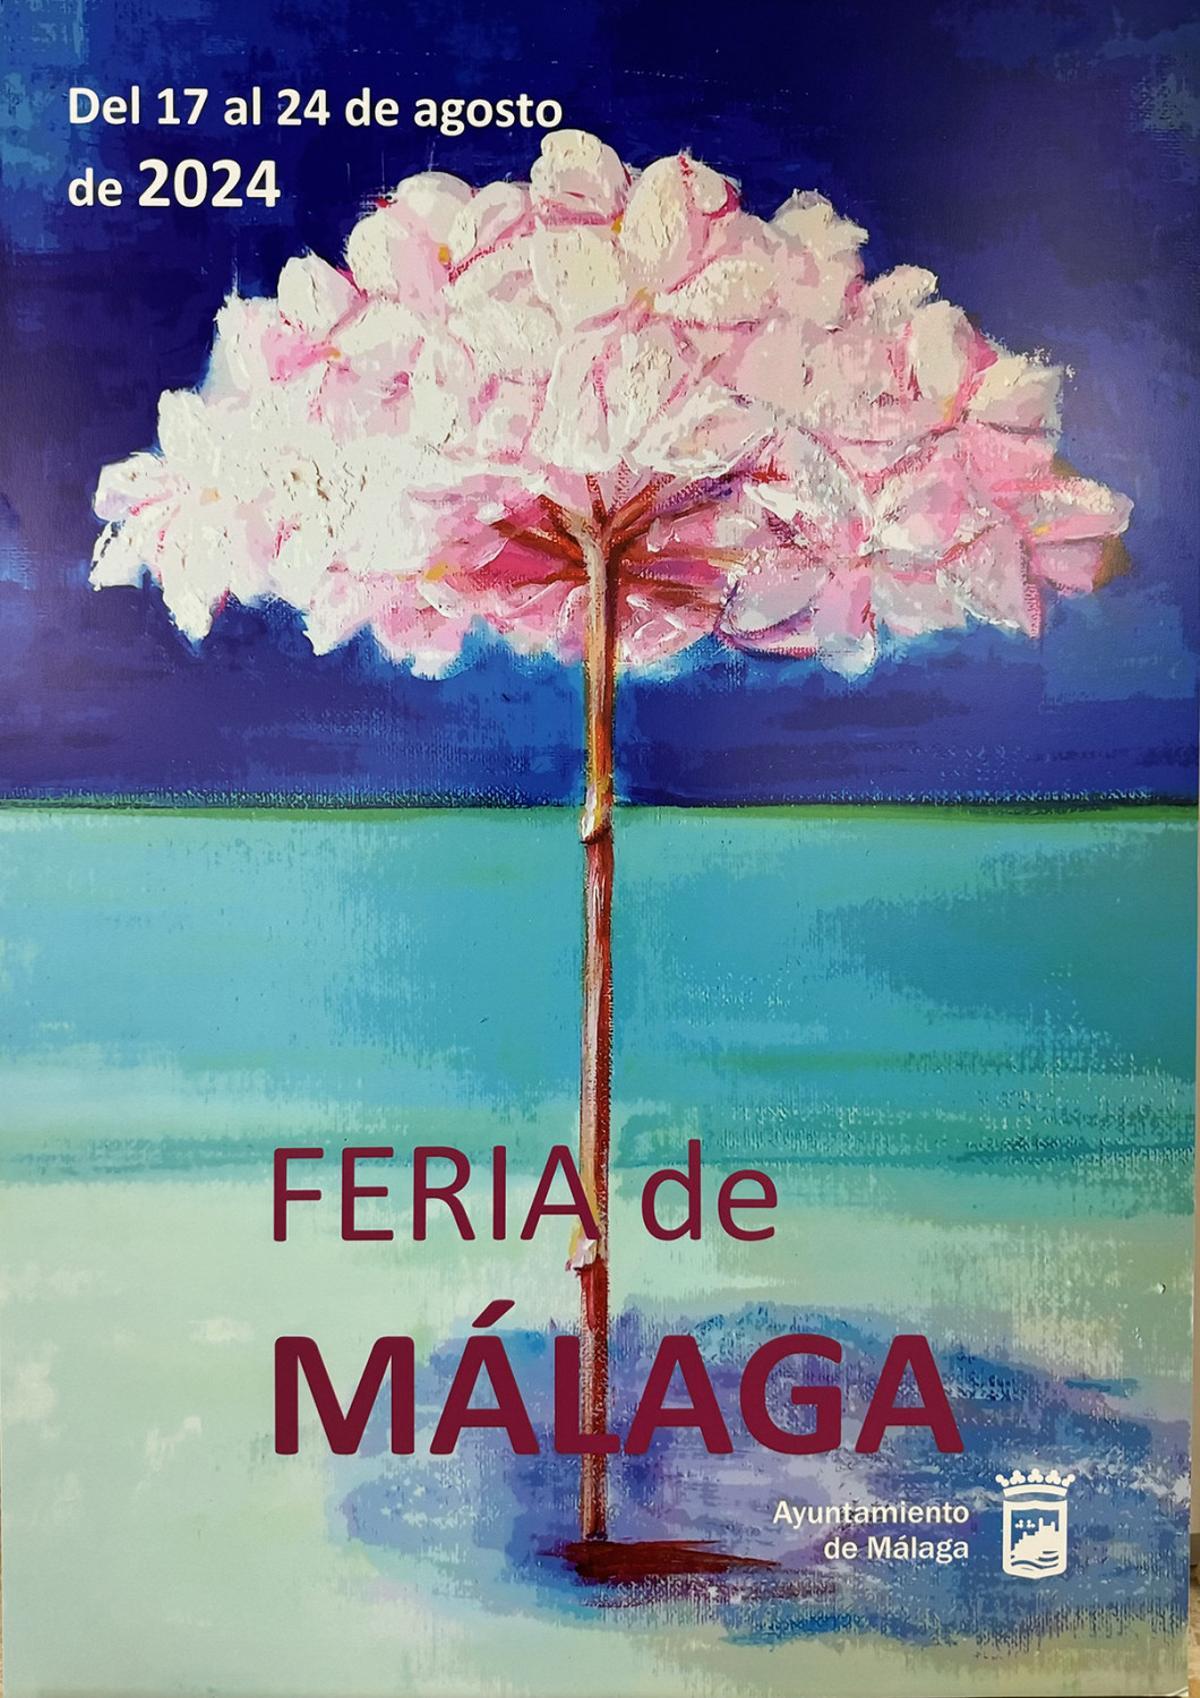 Mi playa en Feria, cartel finalista para la Feria de Málaga 2024